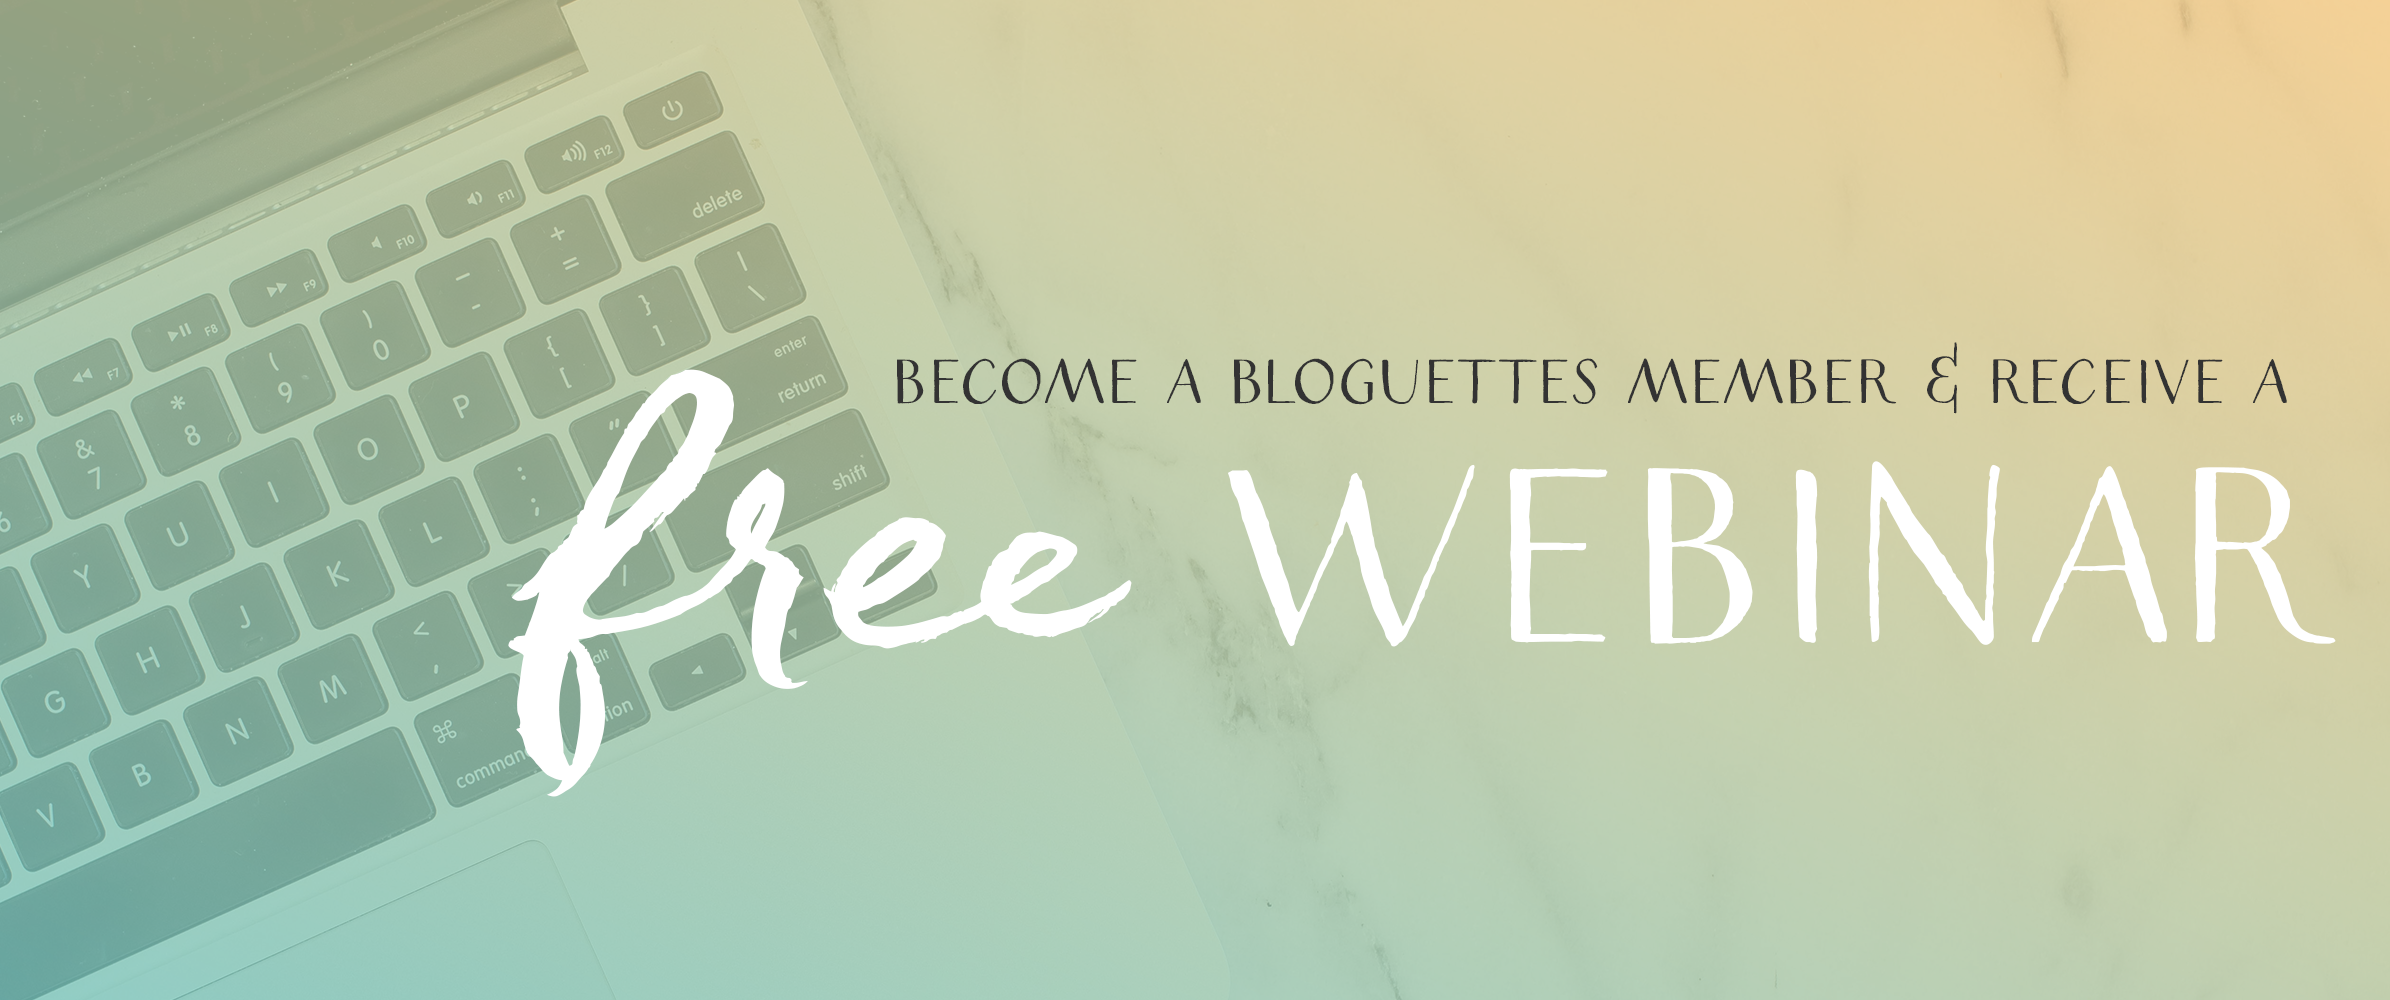 BloguettesWebinar-Sliders-FreeWebinar.png